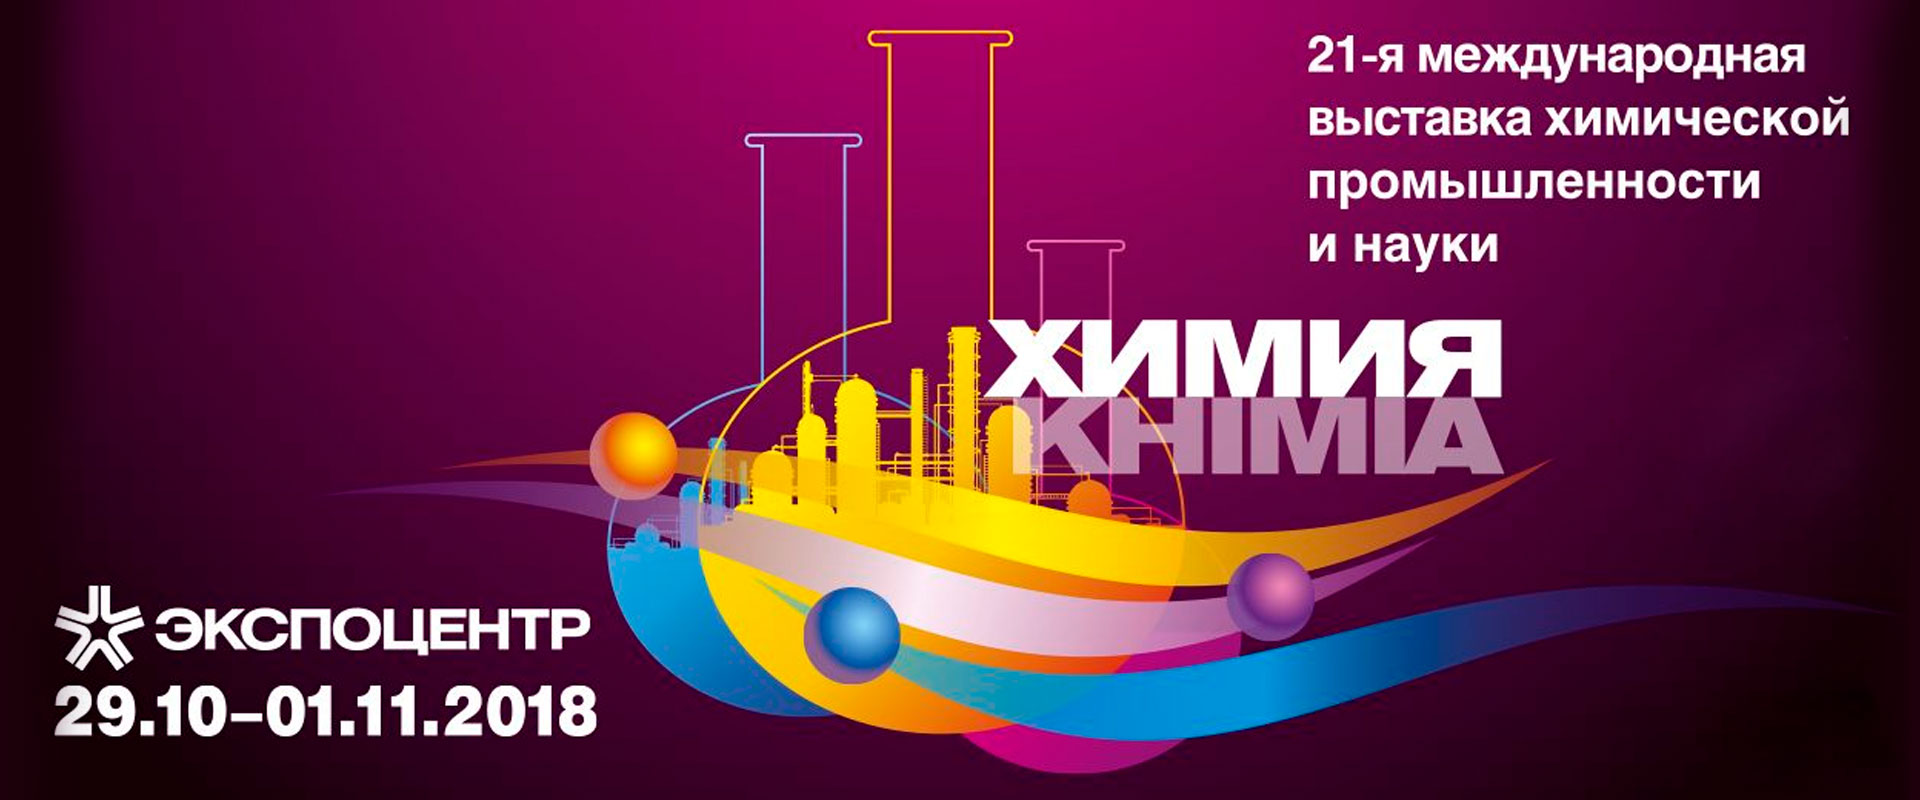 Международная выставка химической промышленности и науки Химия 2018